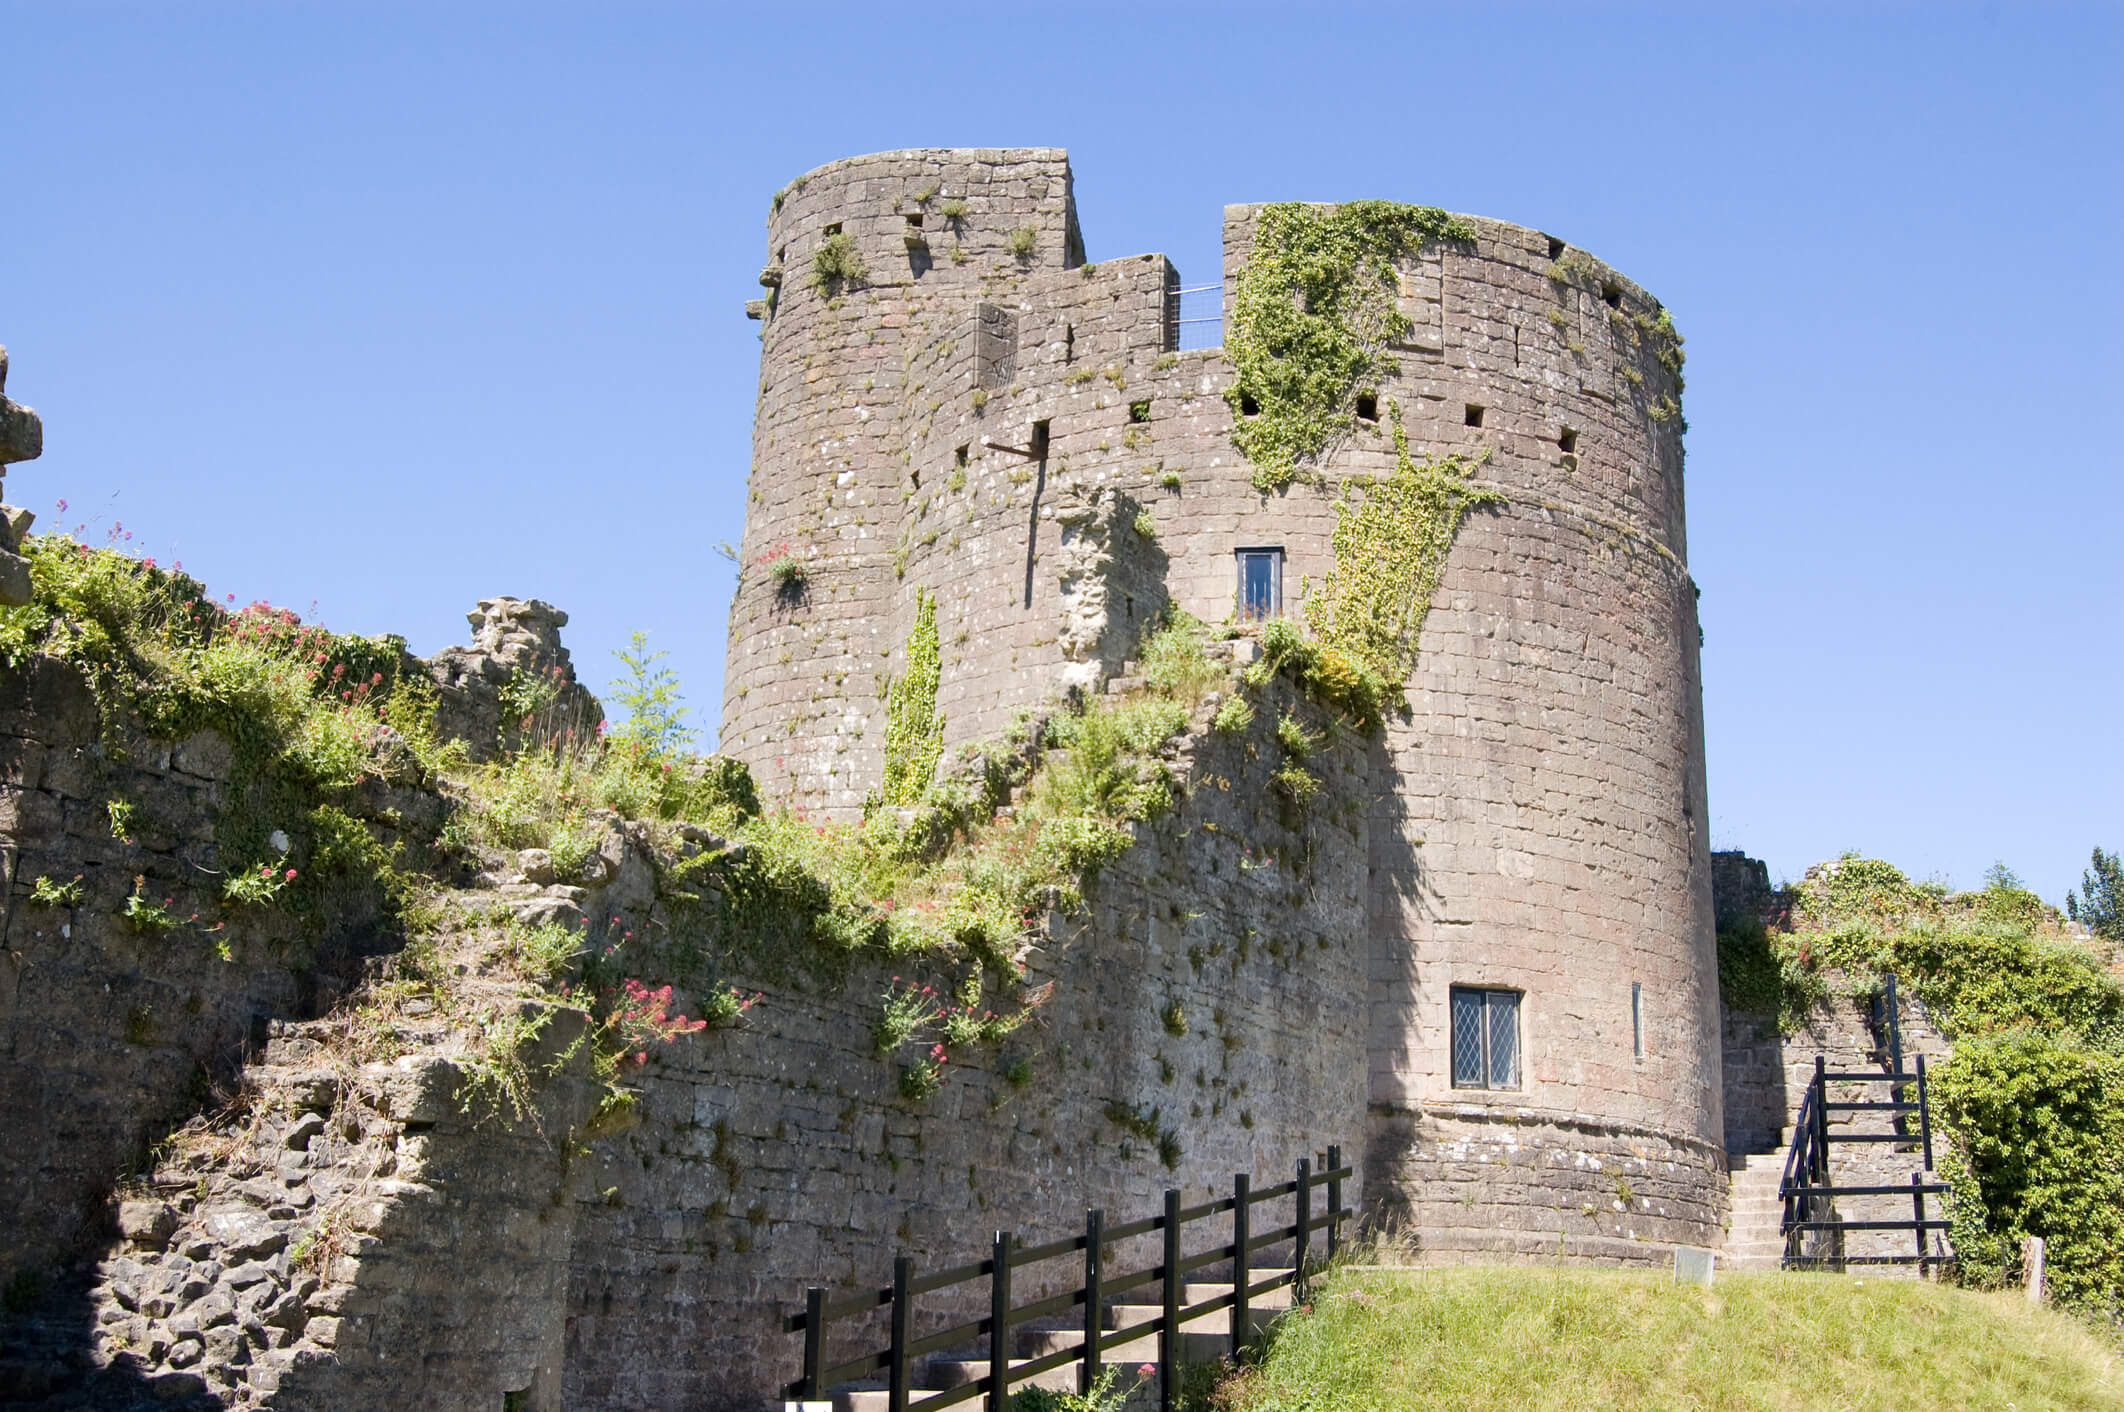 Caldicot castle in Portskewett